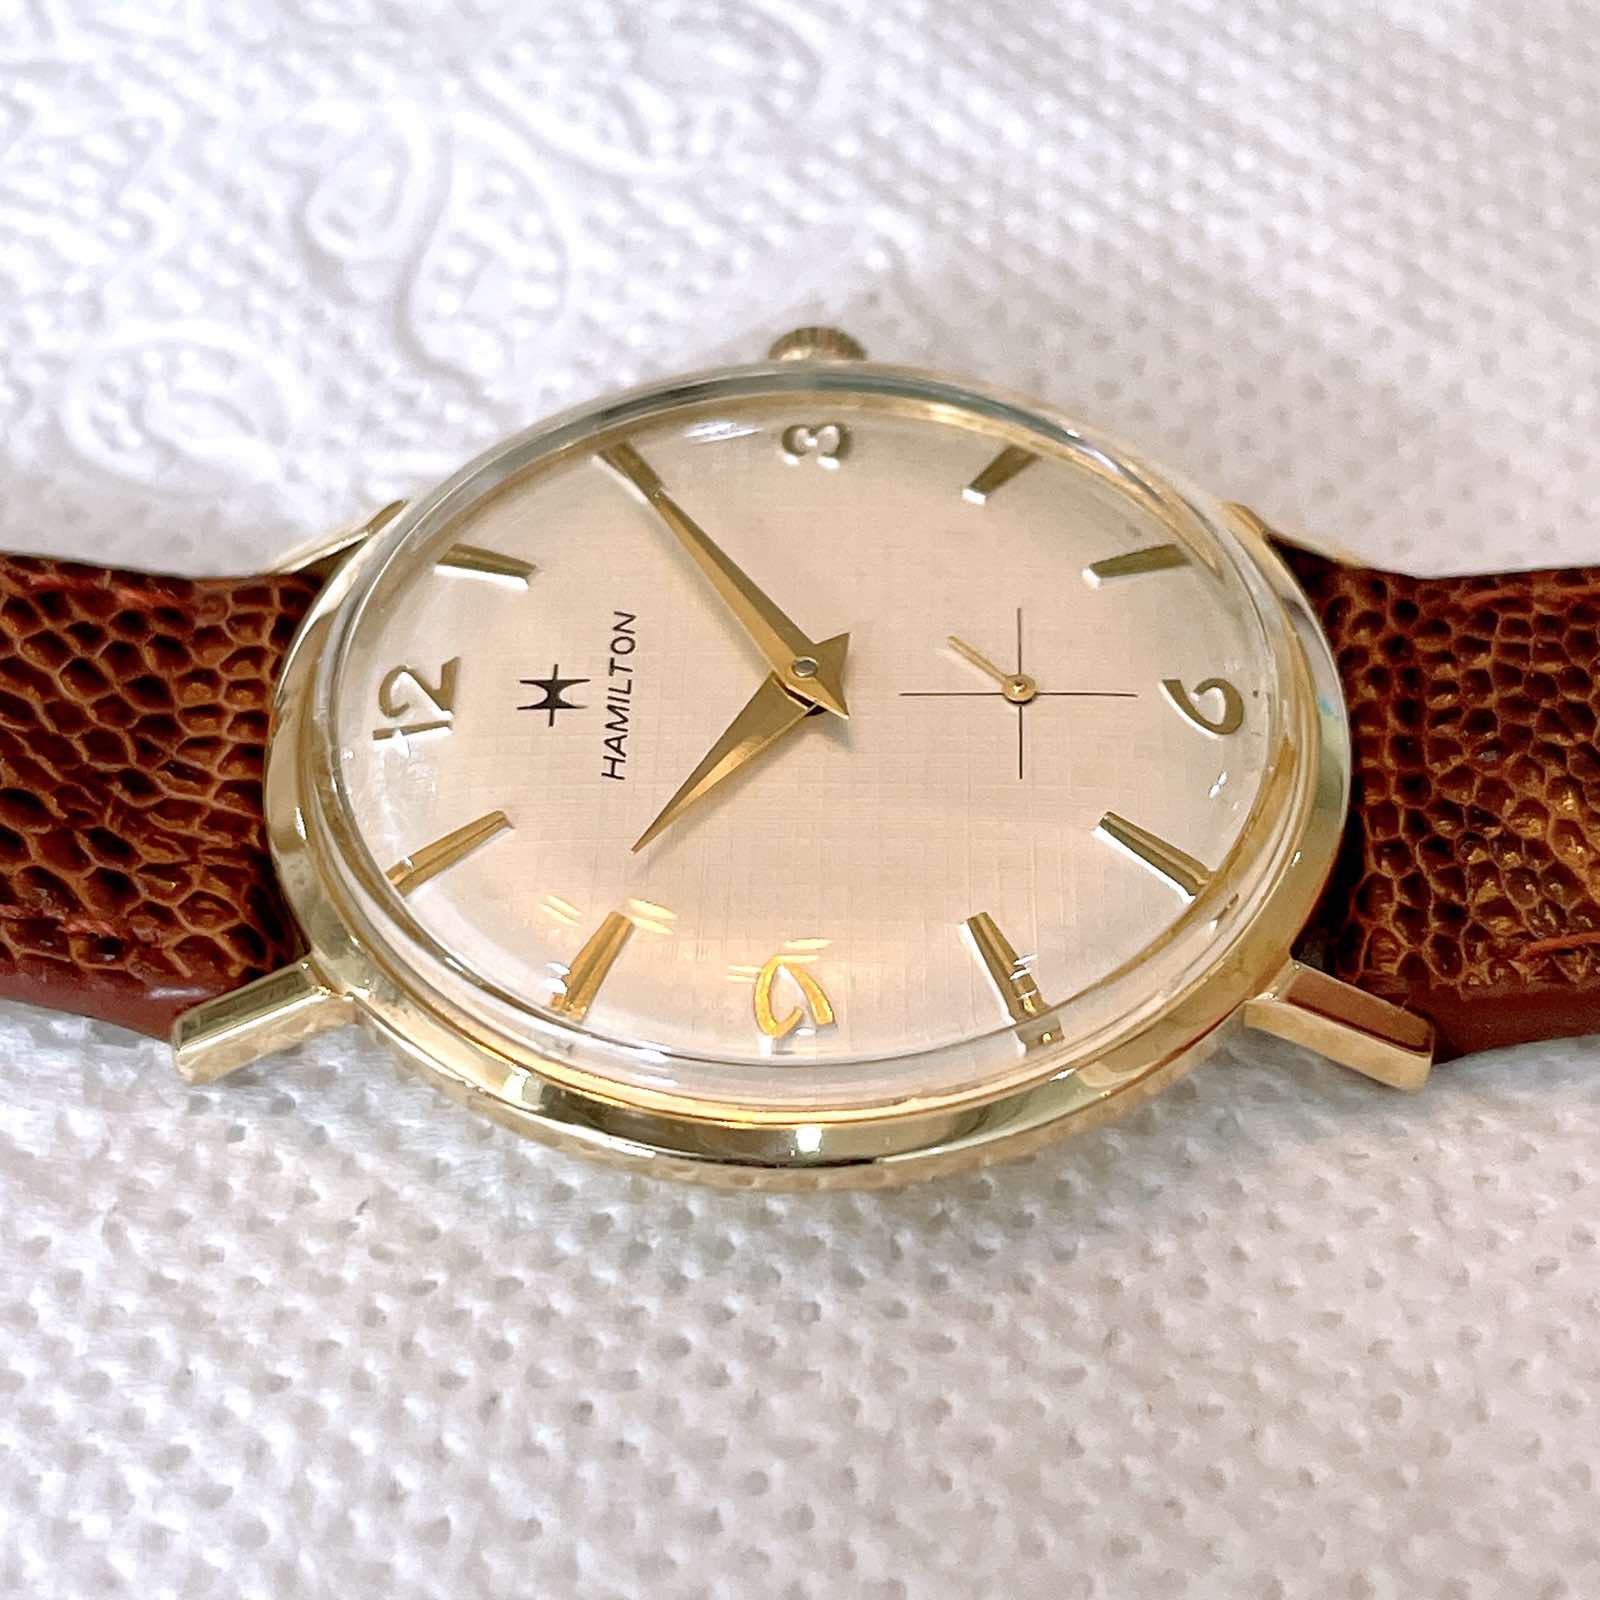 Đồng hồ cổ Hamilton lên dây vàng đúc 14k chính hãng thụy Sĩ